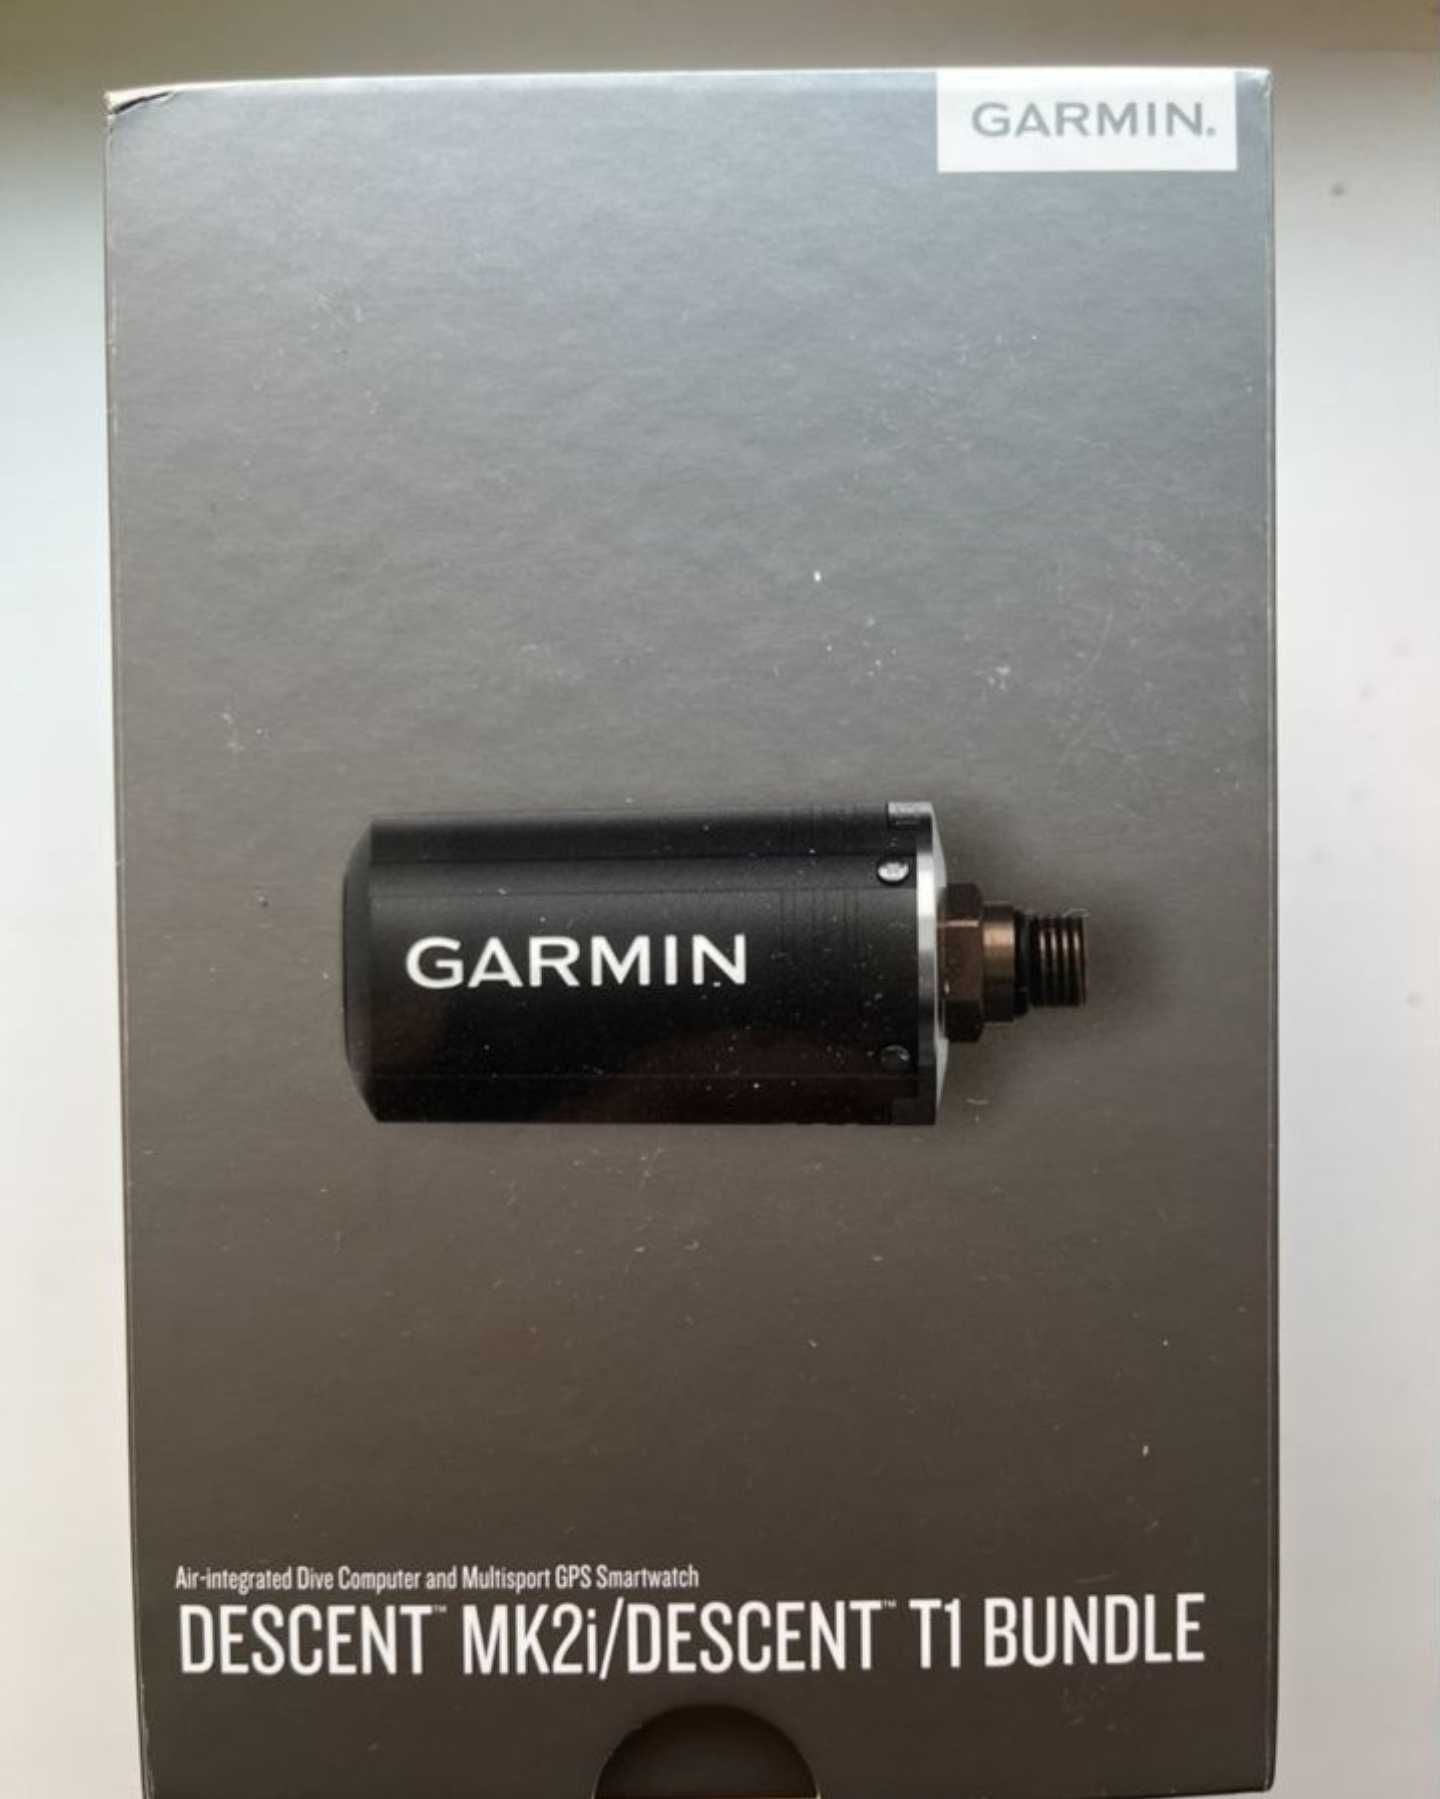 Garmin Descent MK2i + Descent T1 Bundle